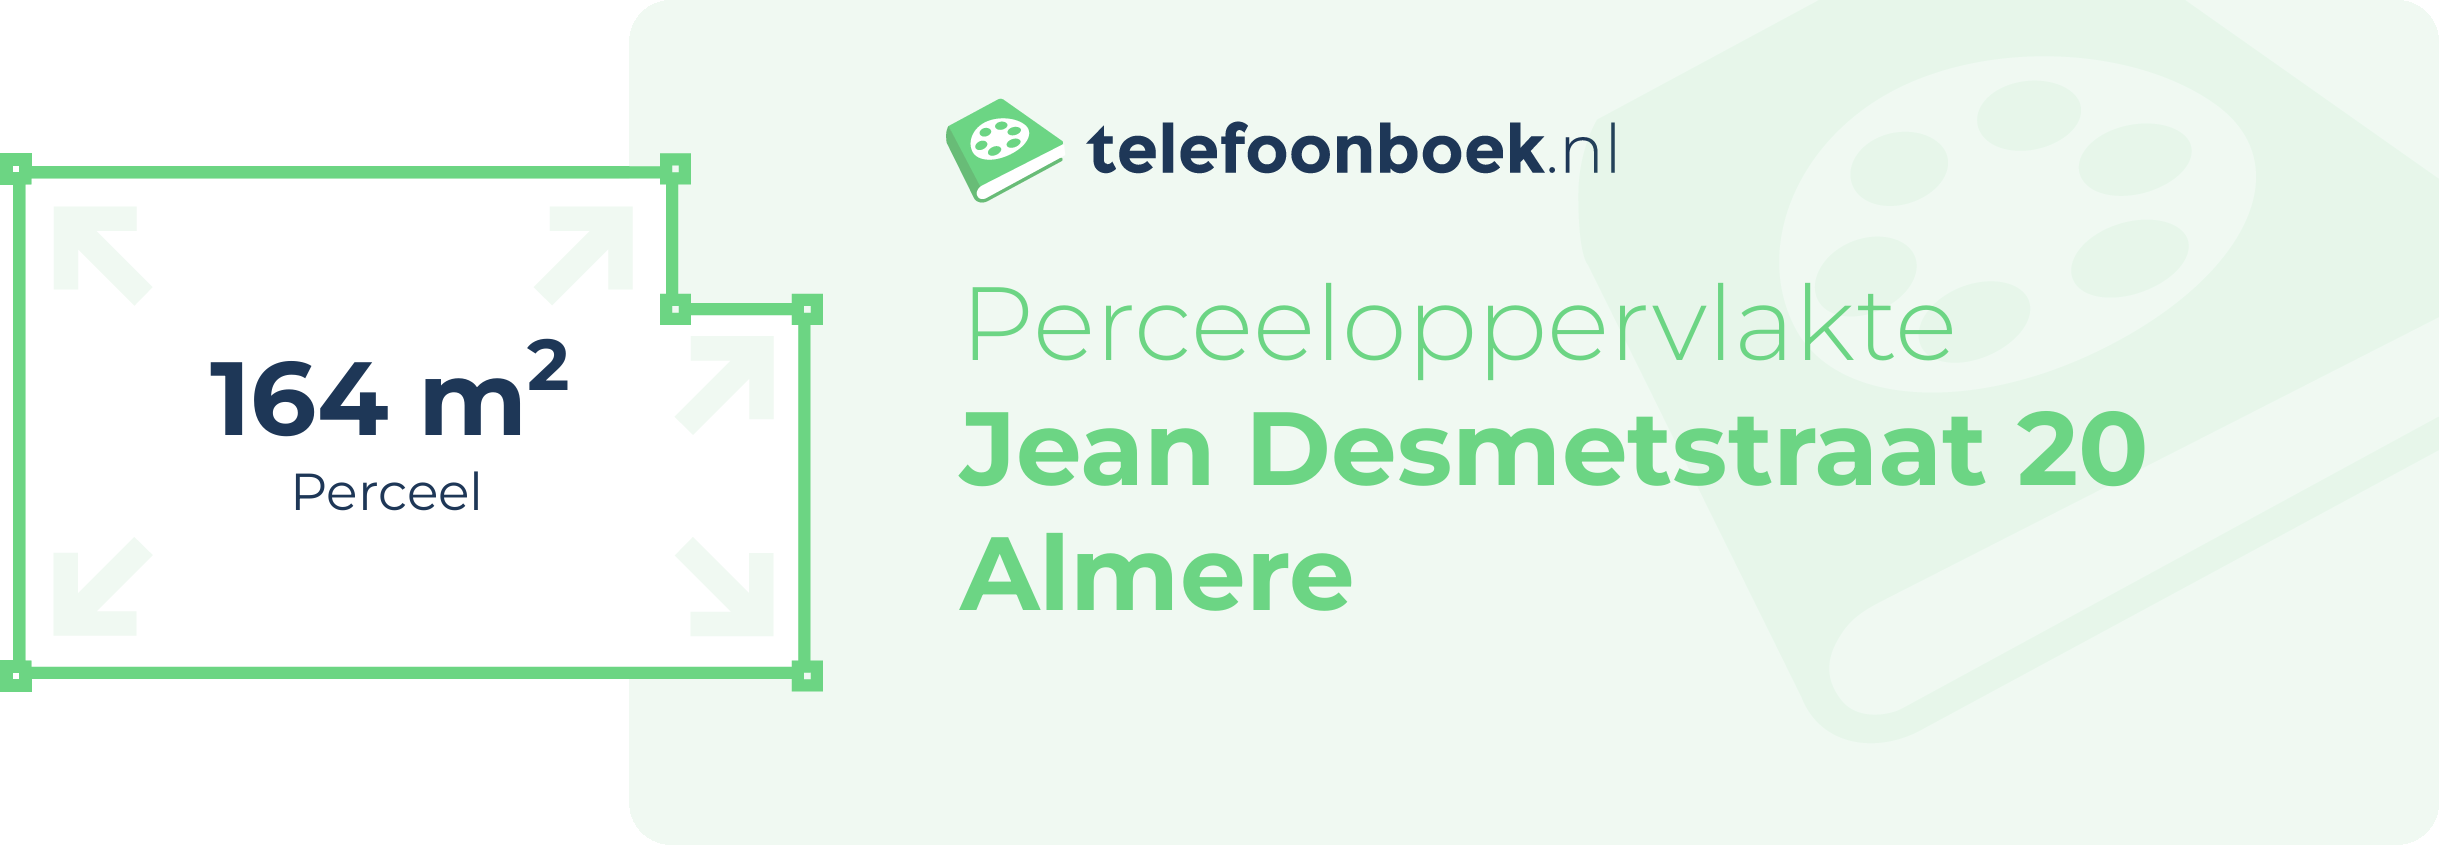 Perceeloppervlakte Jean Desmetstraat 20 Almere